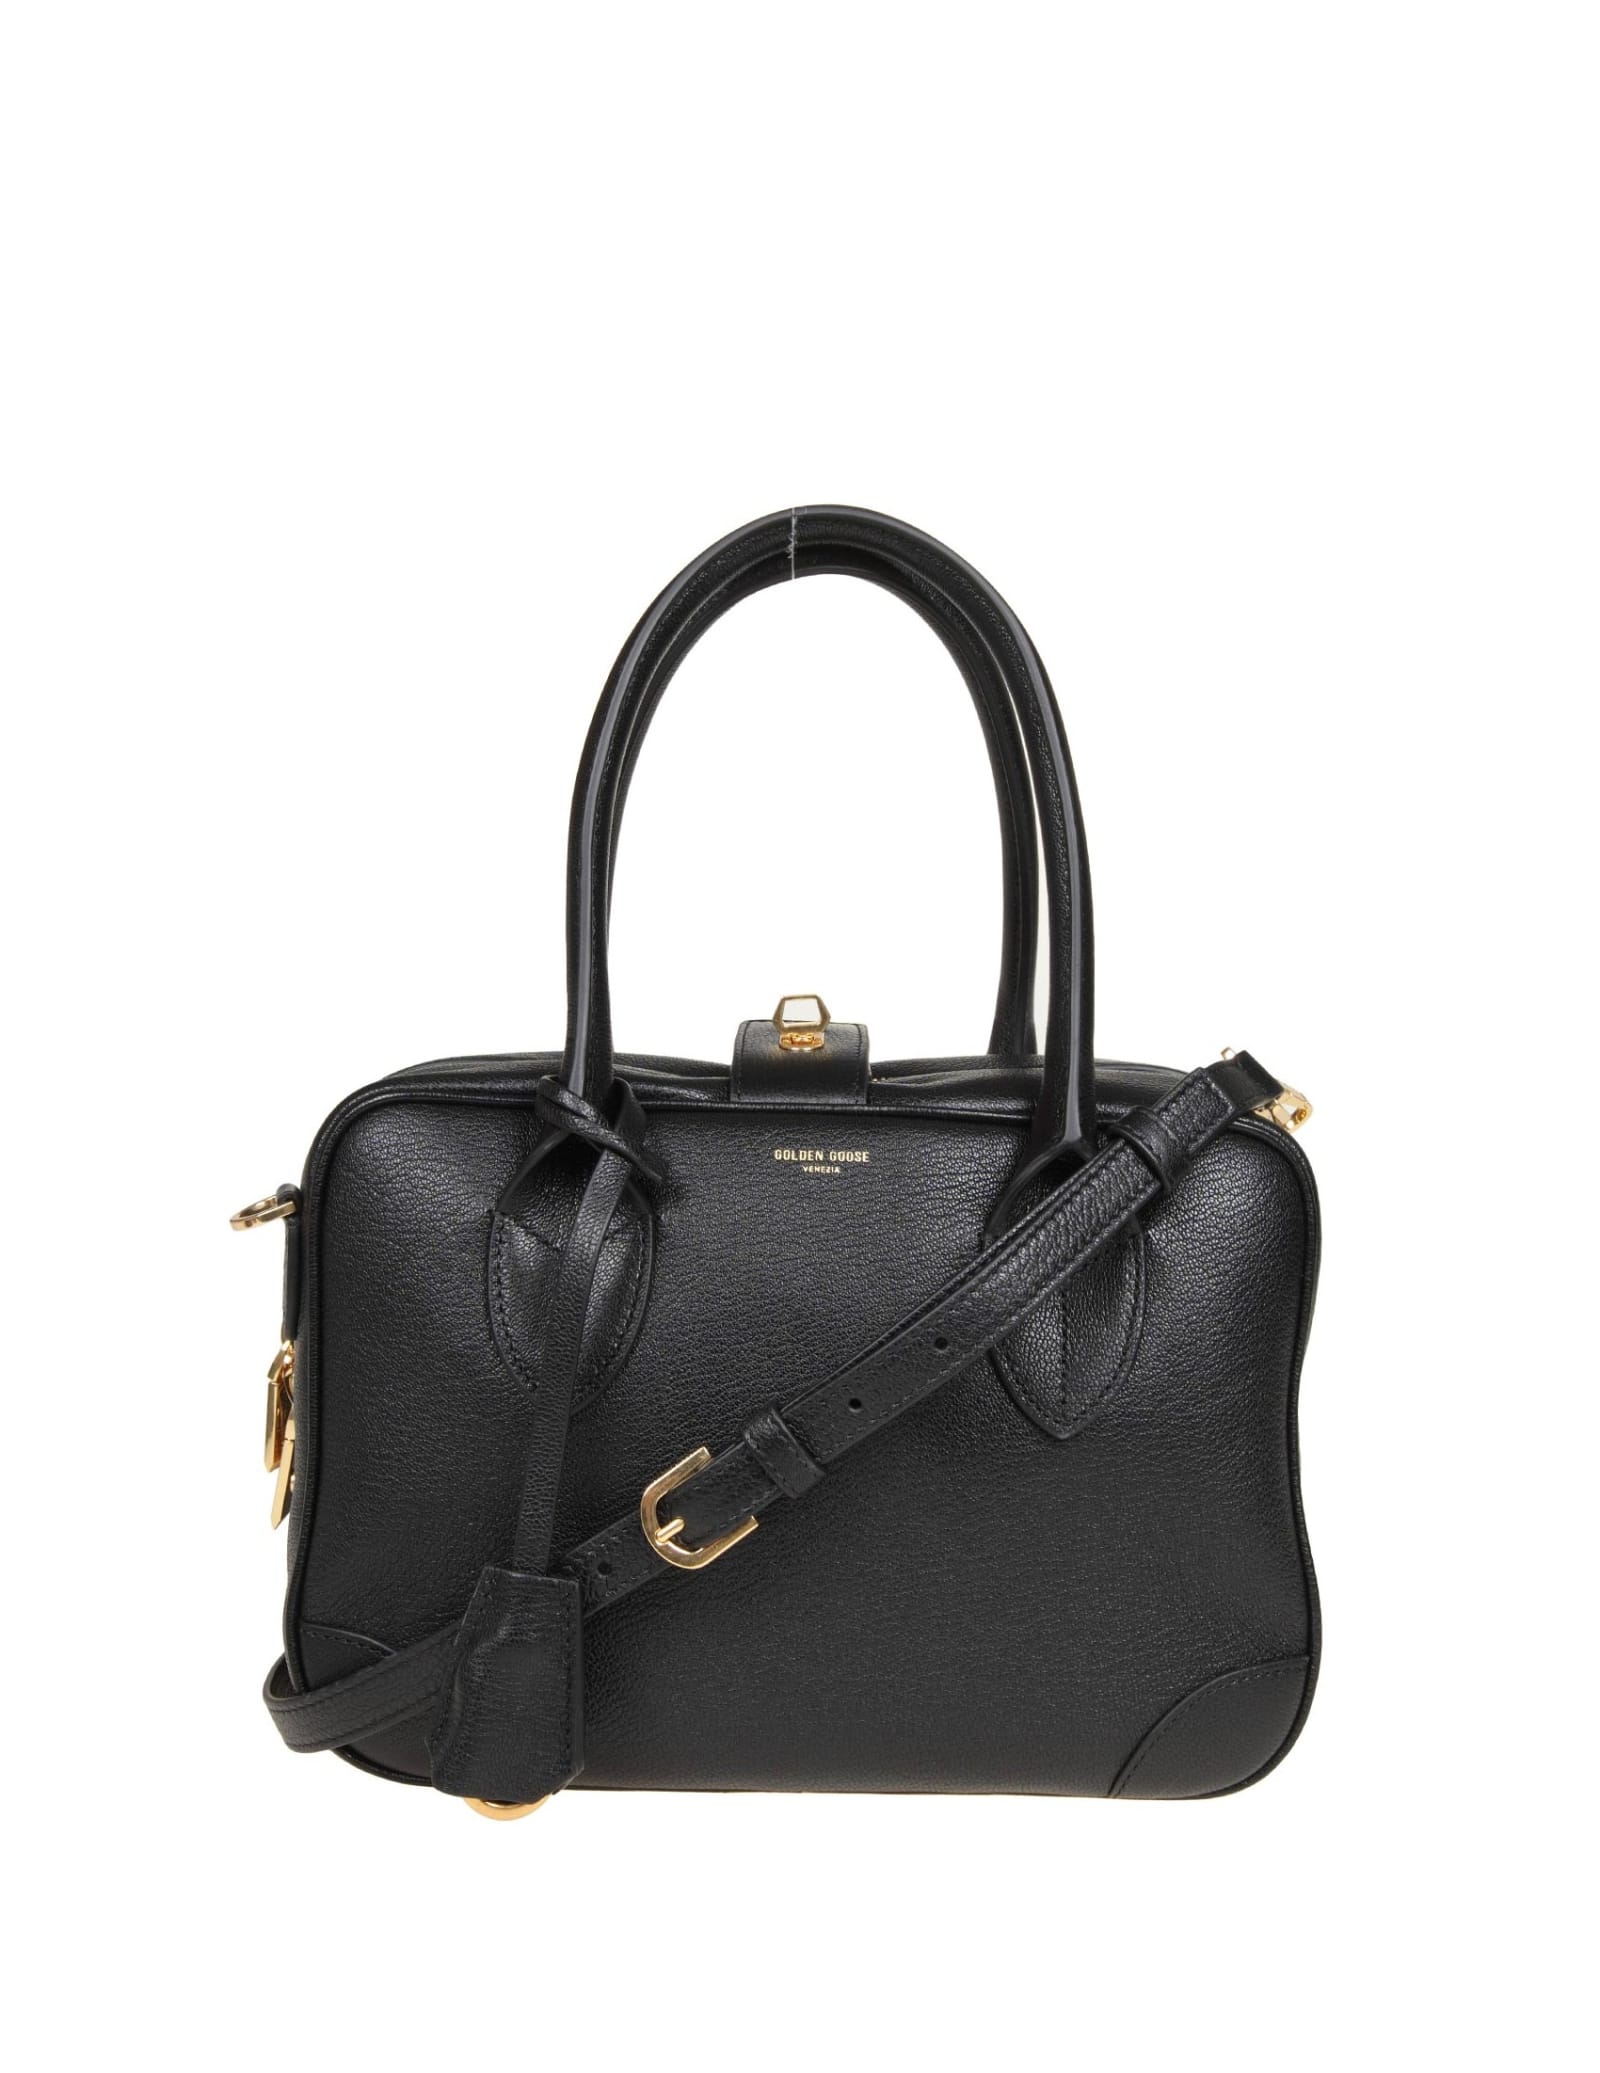 Shop Golden Goose Black Leather Waist Bag